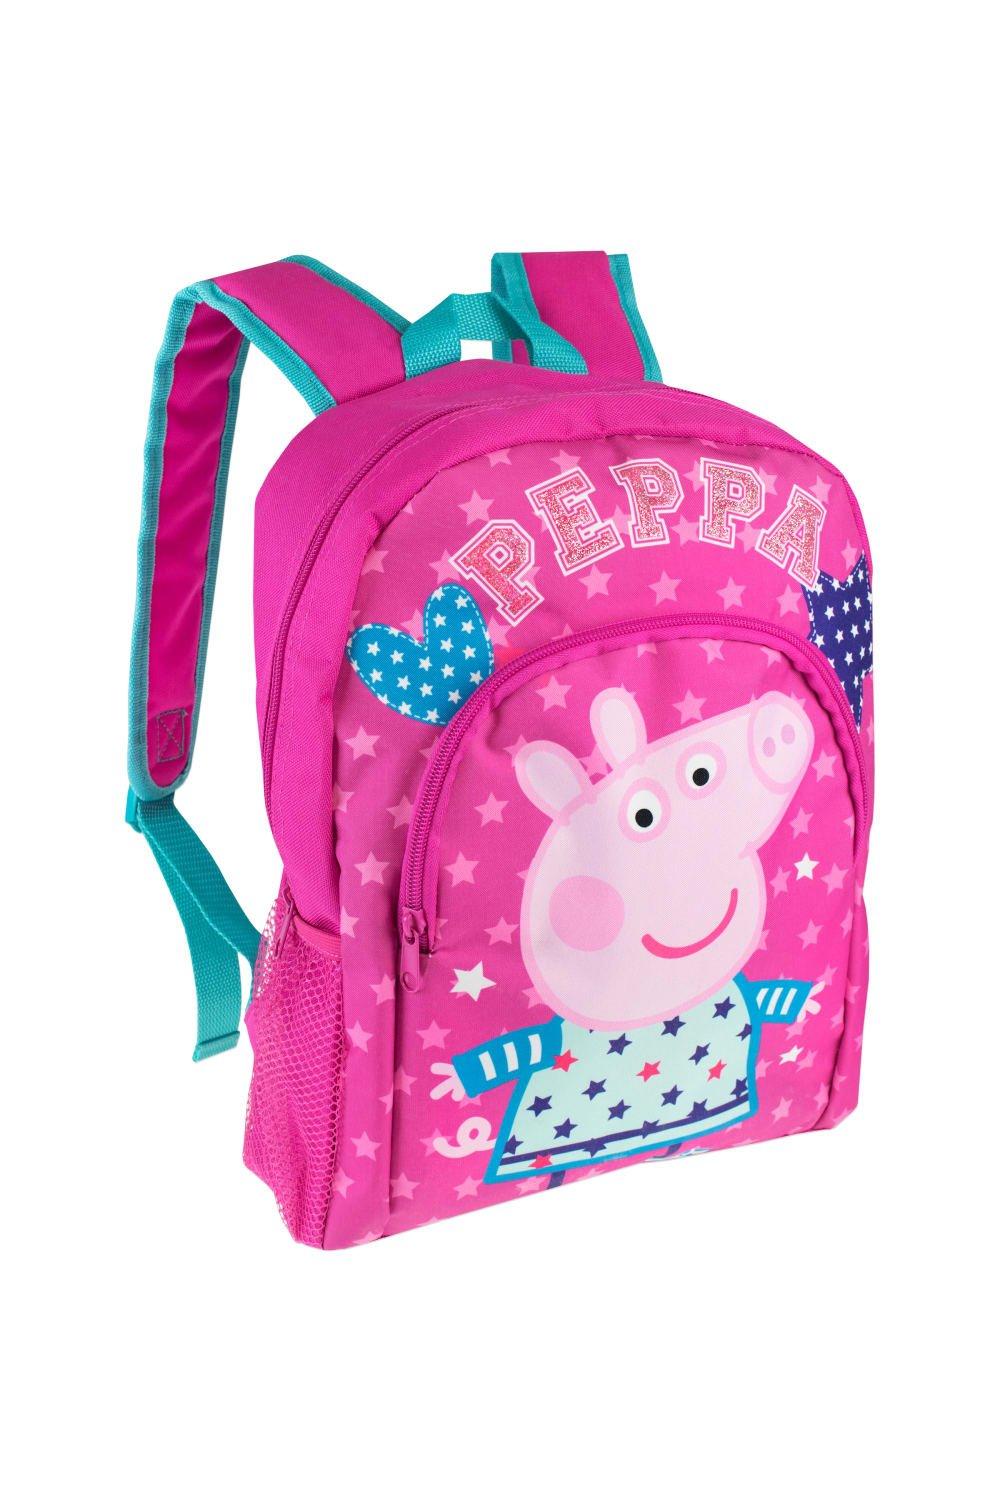 Детский рюкзак Peppa Pig, розовый пазлы свинка пеппа с друзьями на празднике детская логика